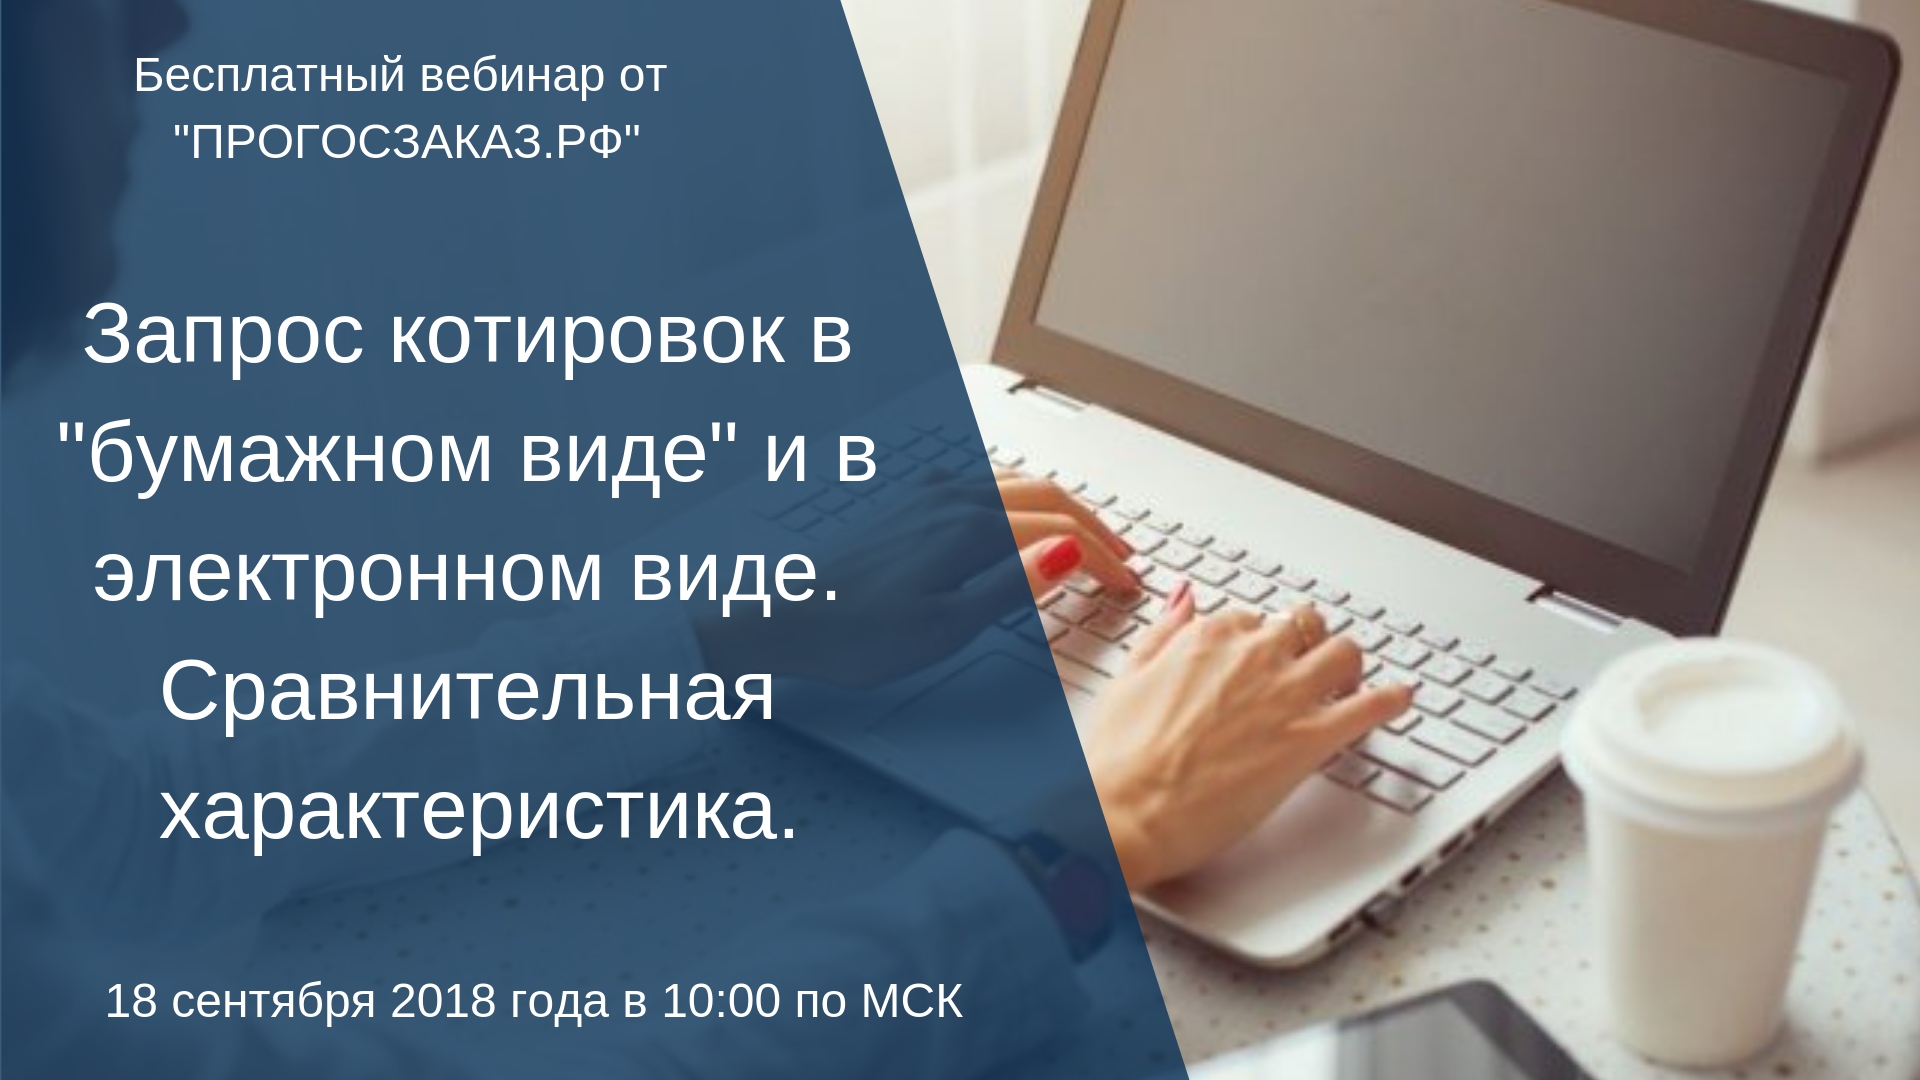 18 сентября 2018 года в 10:00 по Мск состоялся онлайн вебинар на тему: «Запрос котировок в «бумажном виде» и в электронном виде. Сравнительная характеристика»